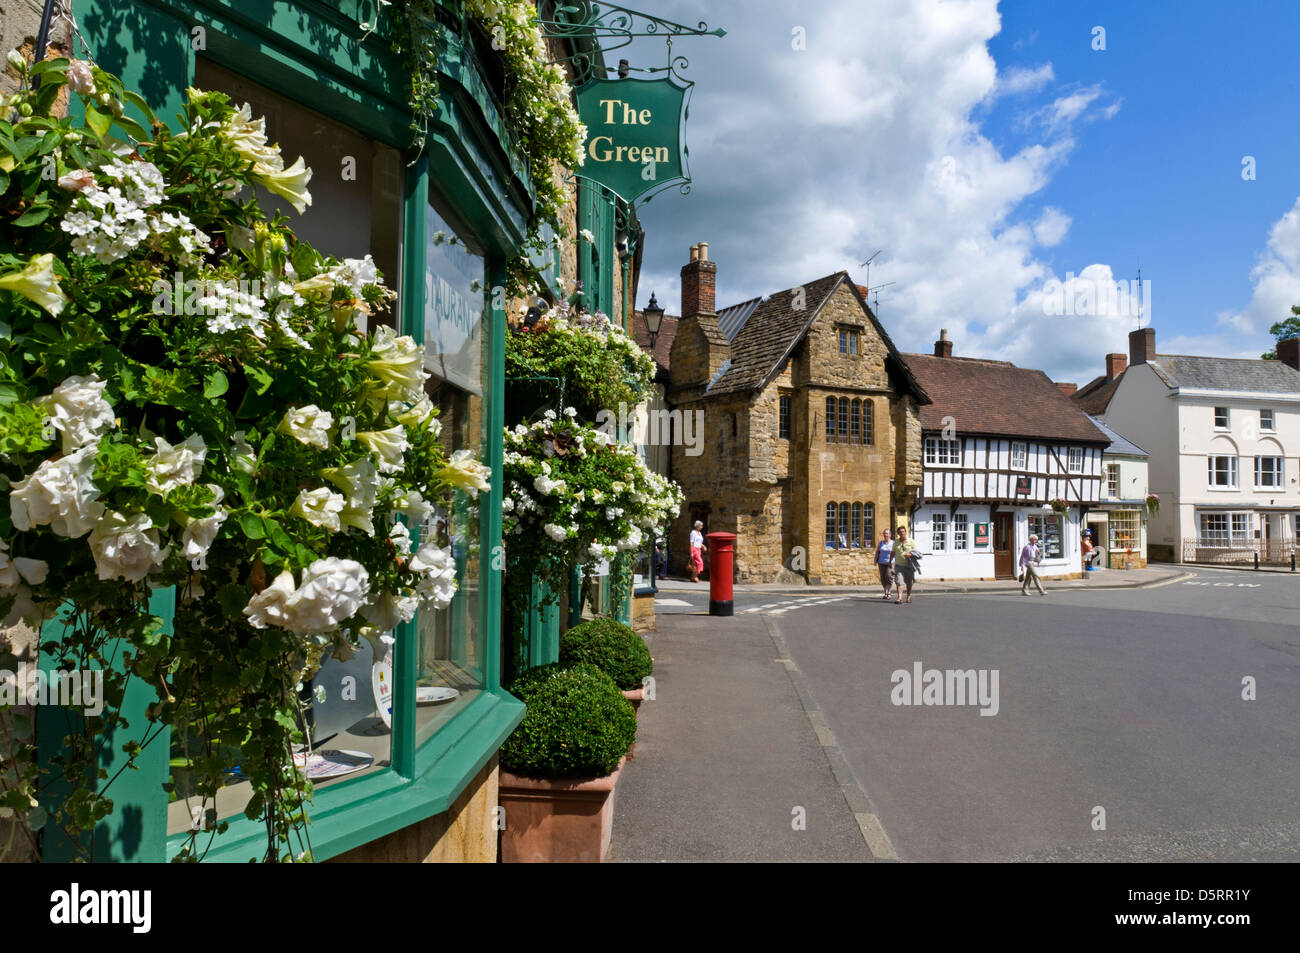 Sherborne High Street historisches Stadtzentrum mit hängenden Körben Blumen und rote Briefkasten Dorset England UK Stockfoto